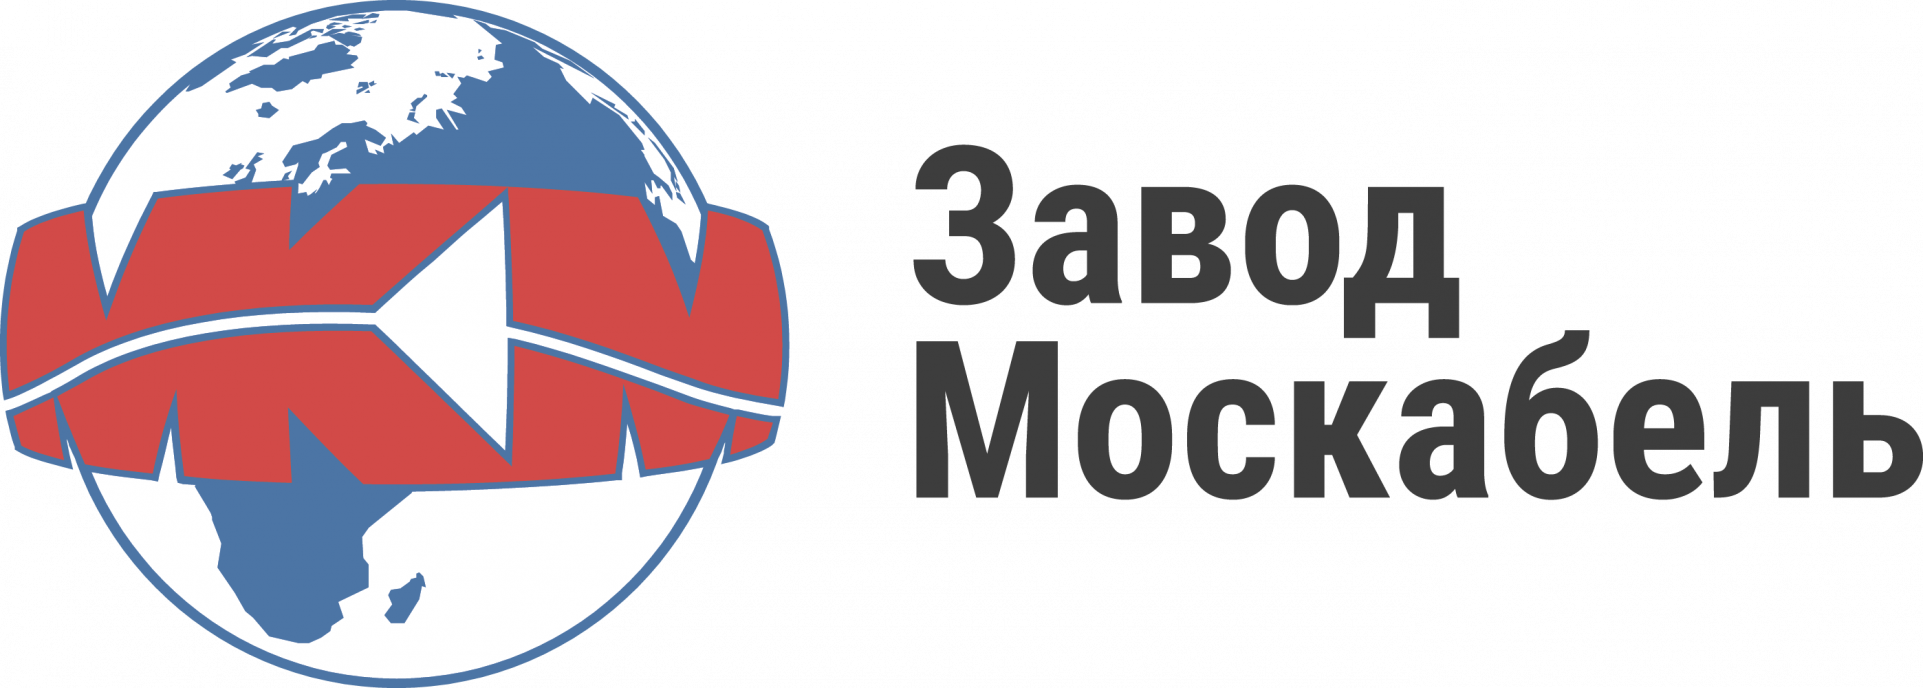 Логотип Завод-Москабель